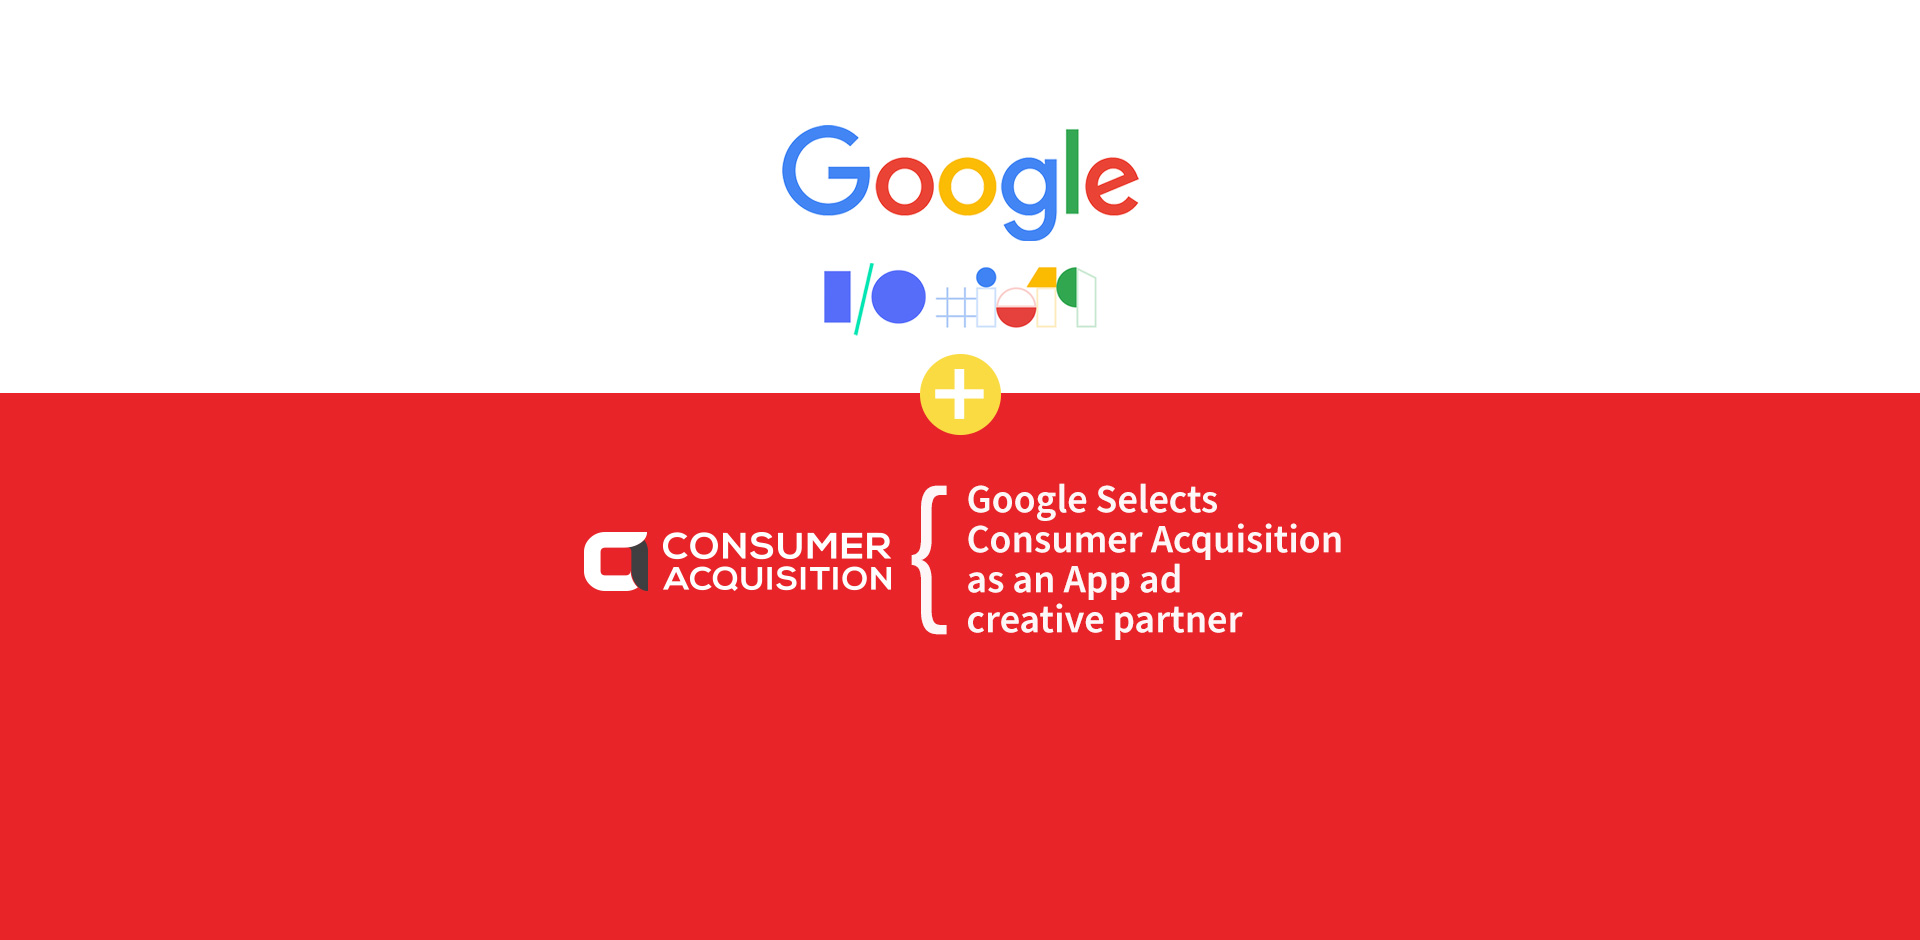 Google launches App ad creative partner program featuring ConsumerAcquisition.com